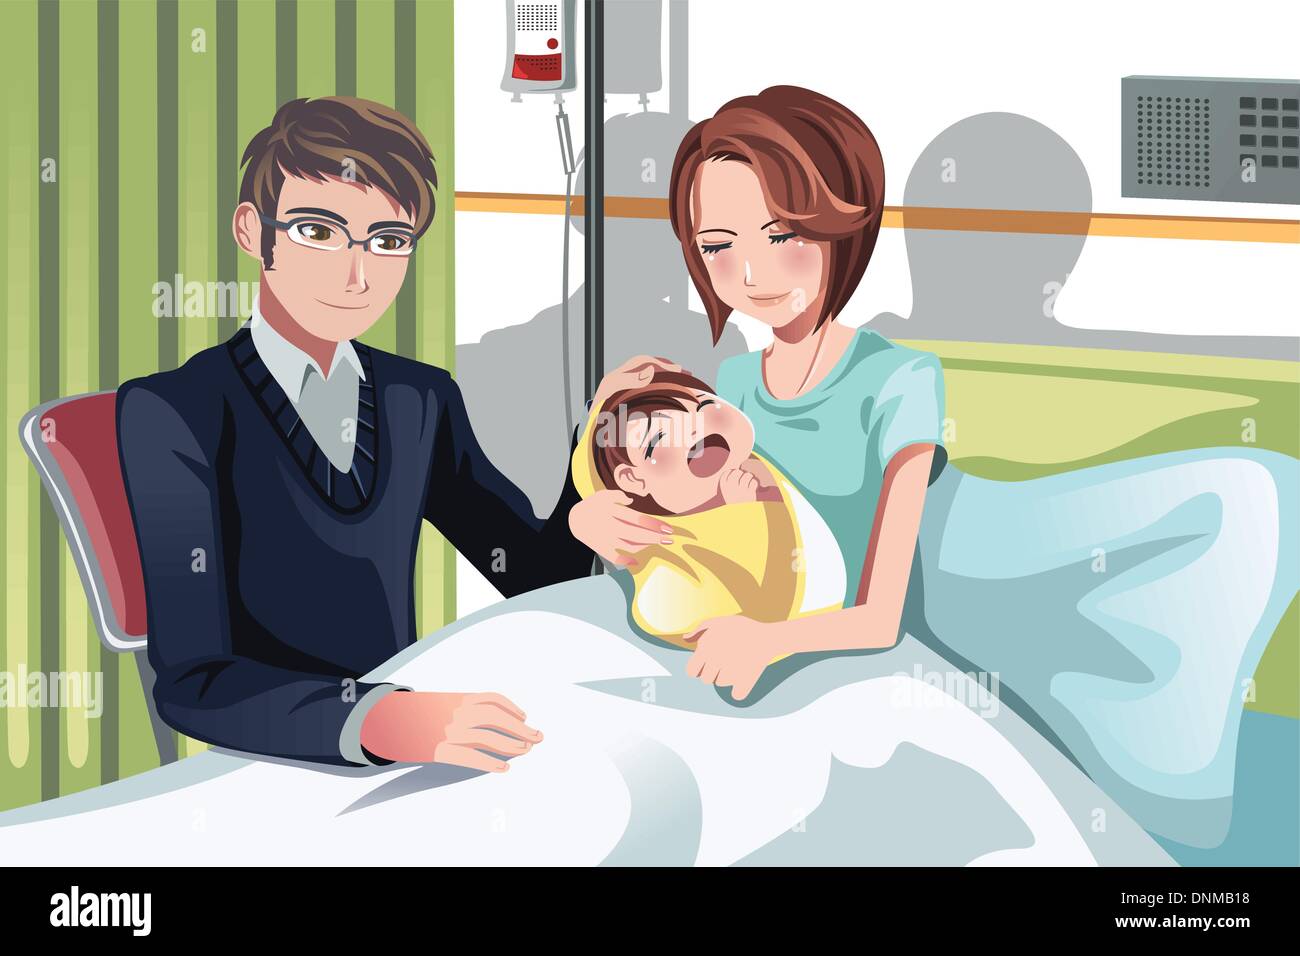 Un vecteur illustration d'un couple ayant un bébé nouveau-né à l'hôpital Illustration de Vecteur